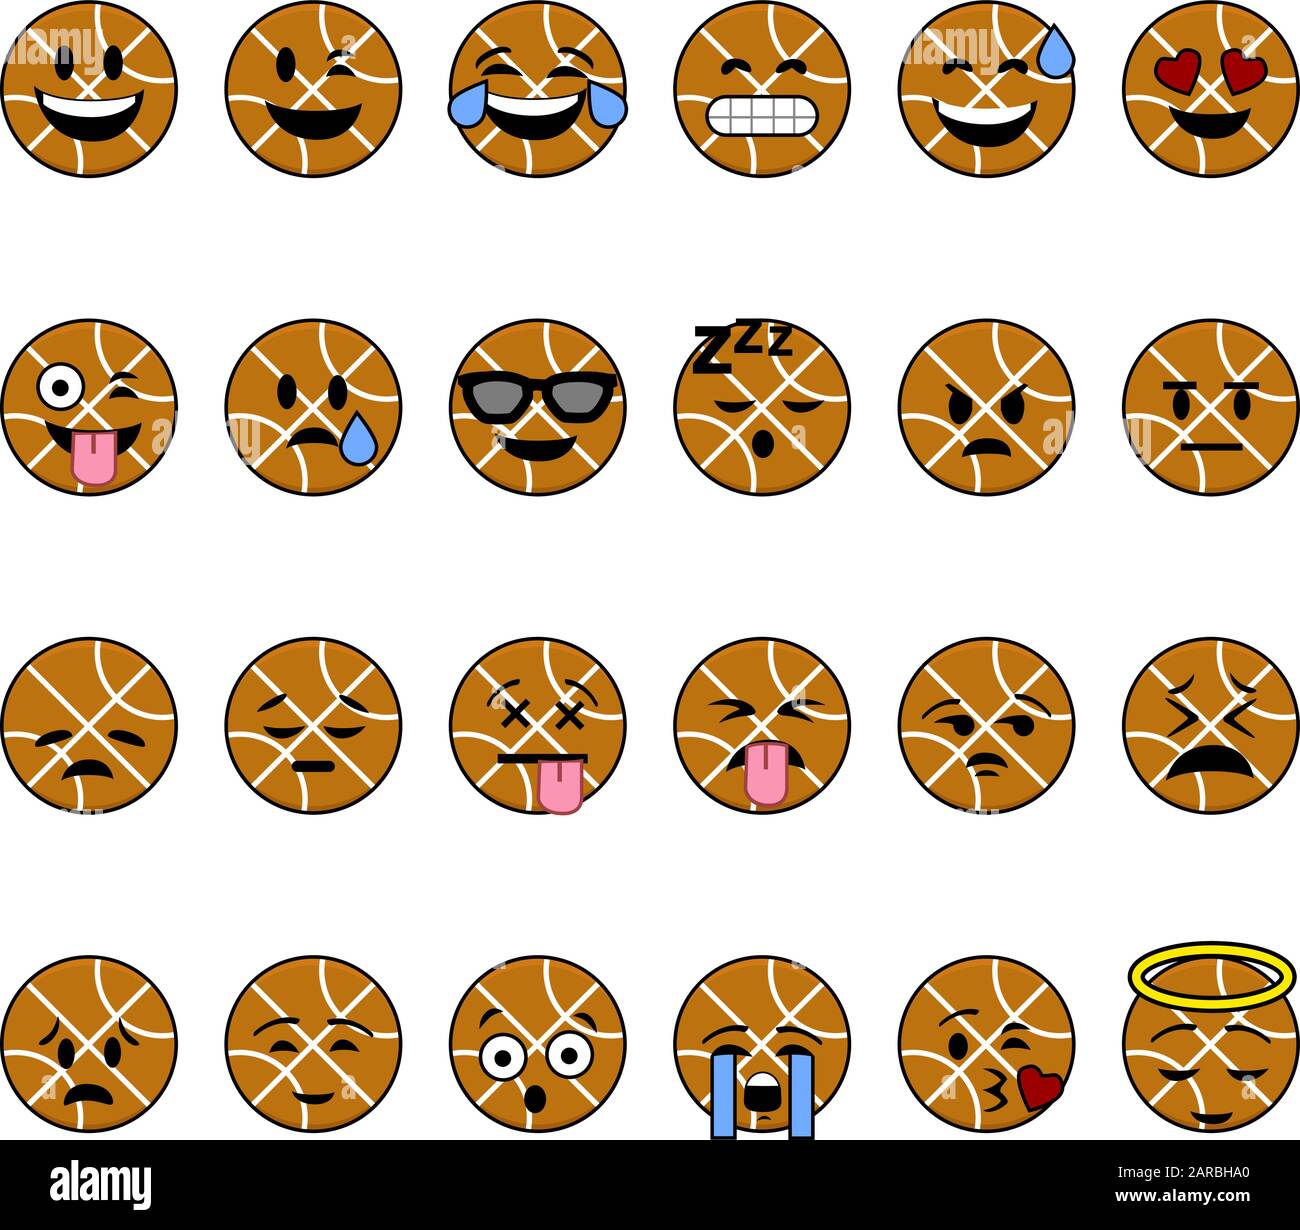 Sammlung von Cartoon-Basketbällen mit Gesichtern, die unterschiedliche Emotionen zeigen Stock Vektor